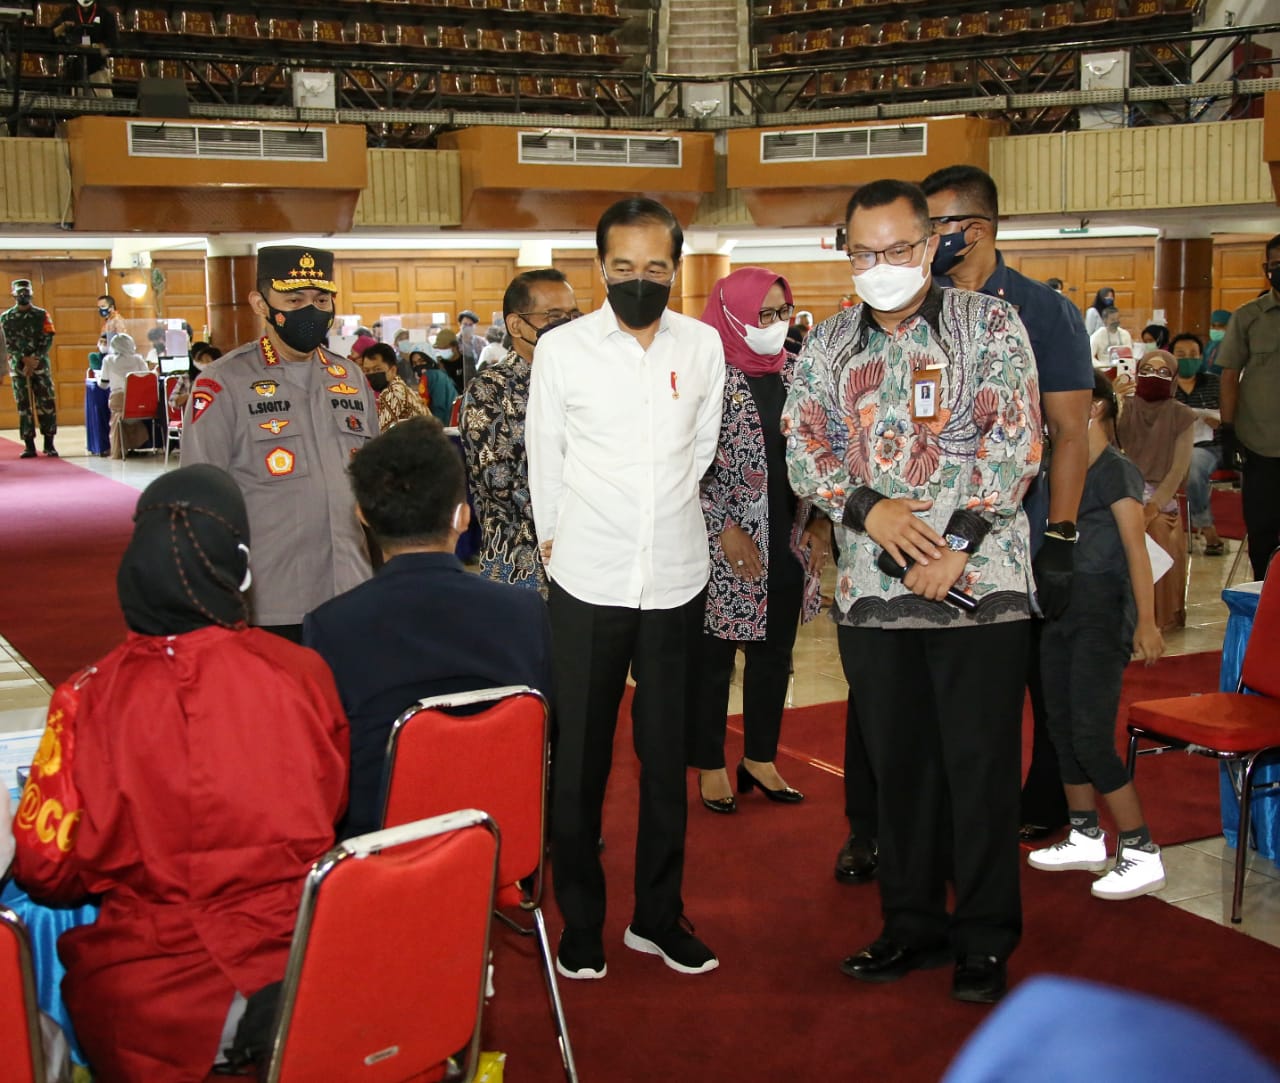 Polri Bersinergi dengan BEM dan OKP Gelar Vaksinasi Merdeka se-Indonesia  Jakarta - Polri bersinergi dengan Badan Eksekutif Mahasiswa (BEM) dan Organisasi Kemasyarakatan dan Pemuda (OKP) menggelar kegiatan vaksinasi merdeka di seluruh Indonesia secara serentak.   Kegiatan ini juga ditinjau langsung oleh Presiden Indonesia Joko Widodo (Jokowi) yang didampingi oleh Kapolri Jenderal Listyo Sigit Prabowo, di Institut Pertanian Bogor (IPB), Rabu (22/9/2021), yang merupakan lokasi acara puncak vaksinasi merdeka tersebut.  Menurut Sigit, sinergitas dengan BEM dan OKP tersebut, merupakan upaya dari Polri untuk mempercepat dan mencapai target yang dicanangkan oleh Presiden Jokowi, terkait vaksinasi satu hari dua juta dosis.  "Vaksinasi Merdeka ini dilaksanakan secara serentak, yang merupakan sinergi antara Polri dengan Badan Eksekutif Mahasiswa (BEM) dan Organisasi Kemasyarakatan dan Pemuda (OKP)," kata Sigit saat mendampingi Presiden Jokowi meninjau vaksinasi merdeka di IPB.  Dalam hal ini, Sigit juga menekankan, sinergi dengan BEM dan OKP juga dapat membantu Pemerintah dalam melakukan sosialisasi pentingnya vaksinasi kepada masyarakat. Sehingga diharapkan, warga tak ragu atau takut untuk melaksanakan vaksin.   Mengingat, kata Sigit, sebagaimana dengan pernyataan Presiden Jokowi, dua kunci pengendalian Covid-19 yakni percepatan vaksinasi dan penerapan protokol kesehatan dengan ketat.   "Sehingga semua masyarakat tahu manfaat vaksin bisa cegah fatalitas dan bentuk kekebalan komunal sebagai persiapan dari pandemi menuju ke endemi," ucap Sigit.  Sigit mengungkapkan, vaksinasi ini diselenggarakan di 96 titik yang meliputi 51 Universitas, 15 Sekolah Tinggi/Institut/Akademi/Politeknik dan 30 Lokasi lainnya seperti Pondok Pesantren (Ponpes), tempat Ibadah, SD, SMK, lapangan, Balairung, Rumah Sakit (RS), Yayasan, Kantor Kecamatan, Aula, Stadion, Balai Desa, Greenpark, Gedung DPRD, Perumahan, Auditorium, Gereja, Mall dan Gedung Wanita.  "Dengan sasaran yaitu mahasiswa, pelajar dan masyarakat umum," ujar mantan Kapolda Banten tersebut.  Dalam kesempatan itu, Presiden Jokowi dan Kapolri juga menyempatkan untuk menyapa secara virtual daerah lainnya yang juga menggelar kegiatan vaksinasi merdeka, yakni Papua Barat, Sumatera Barat (Sumbar), Kalimantan Tengah (Kalteng) dan Kepulauan Riau (Kepri).   Tak hanya itu, vaksinasi merdeka inu juga menyalurkan bantuan sosial (bansos) kepada masyarakat yang perekonomiannya paling terdampak Pandemi Covid-19.   Adapun BEM yang terlibat dalam kegiatan ini diantaranya adalah, BEM-SI, BEM Nusantara, BEM Bulukumba, BEM Universitas Halmahera, BEM UGM, BEM UIN Yogyakarta, BEM Nusantara, BEM Bandung Raya, BEM Muh Banjarmasin, BEM IPB Bogor, BEM Efarina Pematang Siantar, BEM Universitas Riau, BEM Universitas Warmadewa, dan BEM Universitas Muhammadiyah.  Kemudian, 15 OKP yang terlibat yakni, PB Semmi, Rumah Milenial, OKP Sahat, GAMKI, GMNI, GINKA, Barisan Aktifis Muda, JAMNUSA, PMI, Cipayung, Perempuan Milenial Indonesia, Milenial Mitra Polisi, Kaukus Muda Indonesia, MPARA Blora, dan Pemuda Lintas.   Vaksinasi merdeka digelar mulai dari 22 September hingga 23 September 2021. Adapun, vaksin yang dipersiapkan sebanyak 253.297. Sementara, bansos yang disalurkan kepada masyarakat sejumlah 103.247 paket sembako.  Tinjauan vaksinasi merdeka di IPB juga dihadiri oleh Menteri Sekretaris Negara Pratikno, Pangdam Siliwangi Mayjen TNI Agus Subiyanto, Kapolda Jawa Barat Irjen Ahmad Dofiri, Bupati Bogor Ade Yasin, dan Rektor IPB Prof. Dr. Arif Satria.